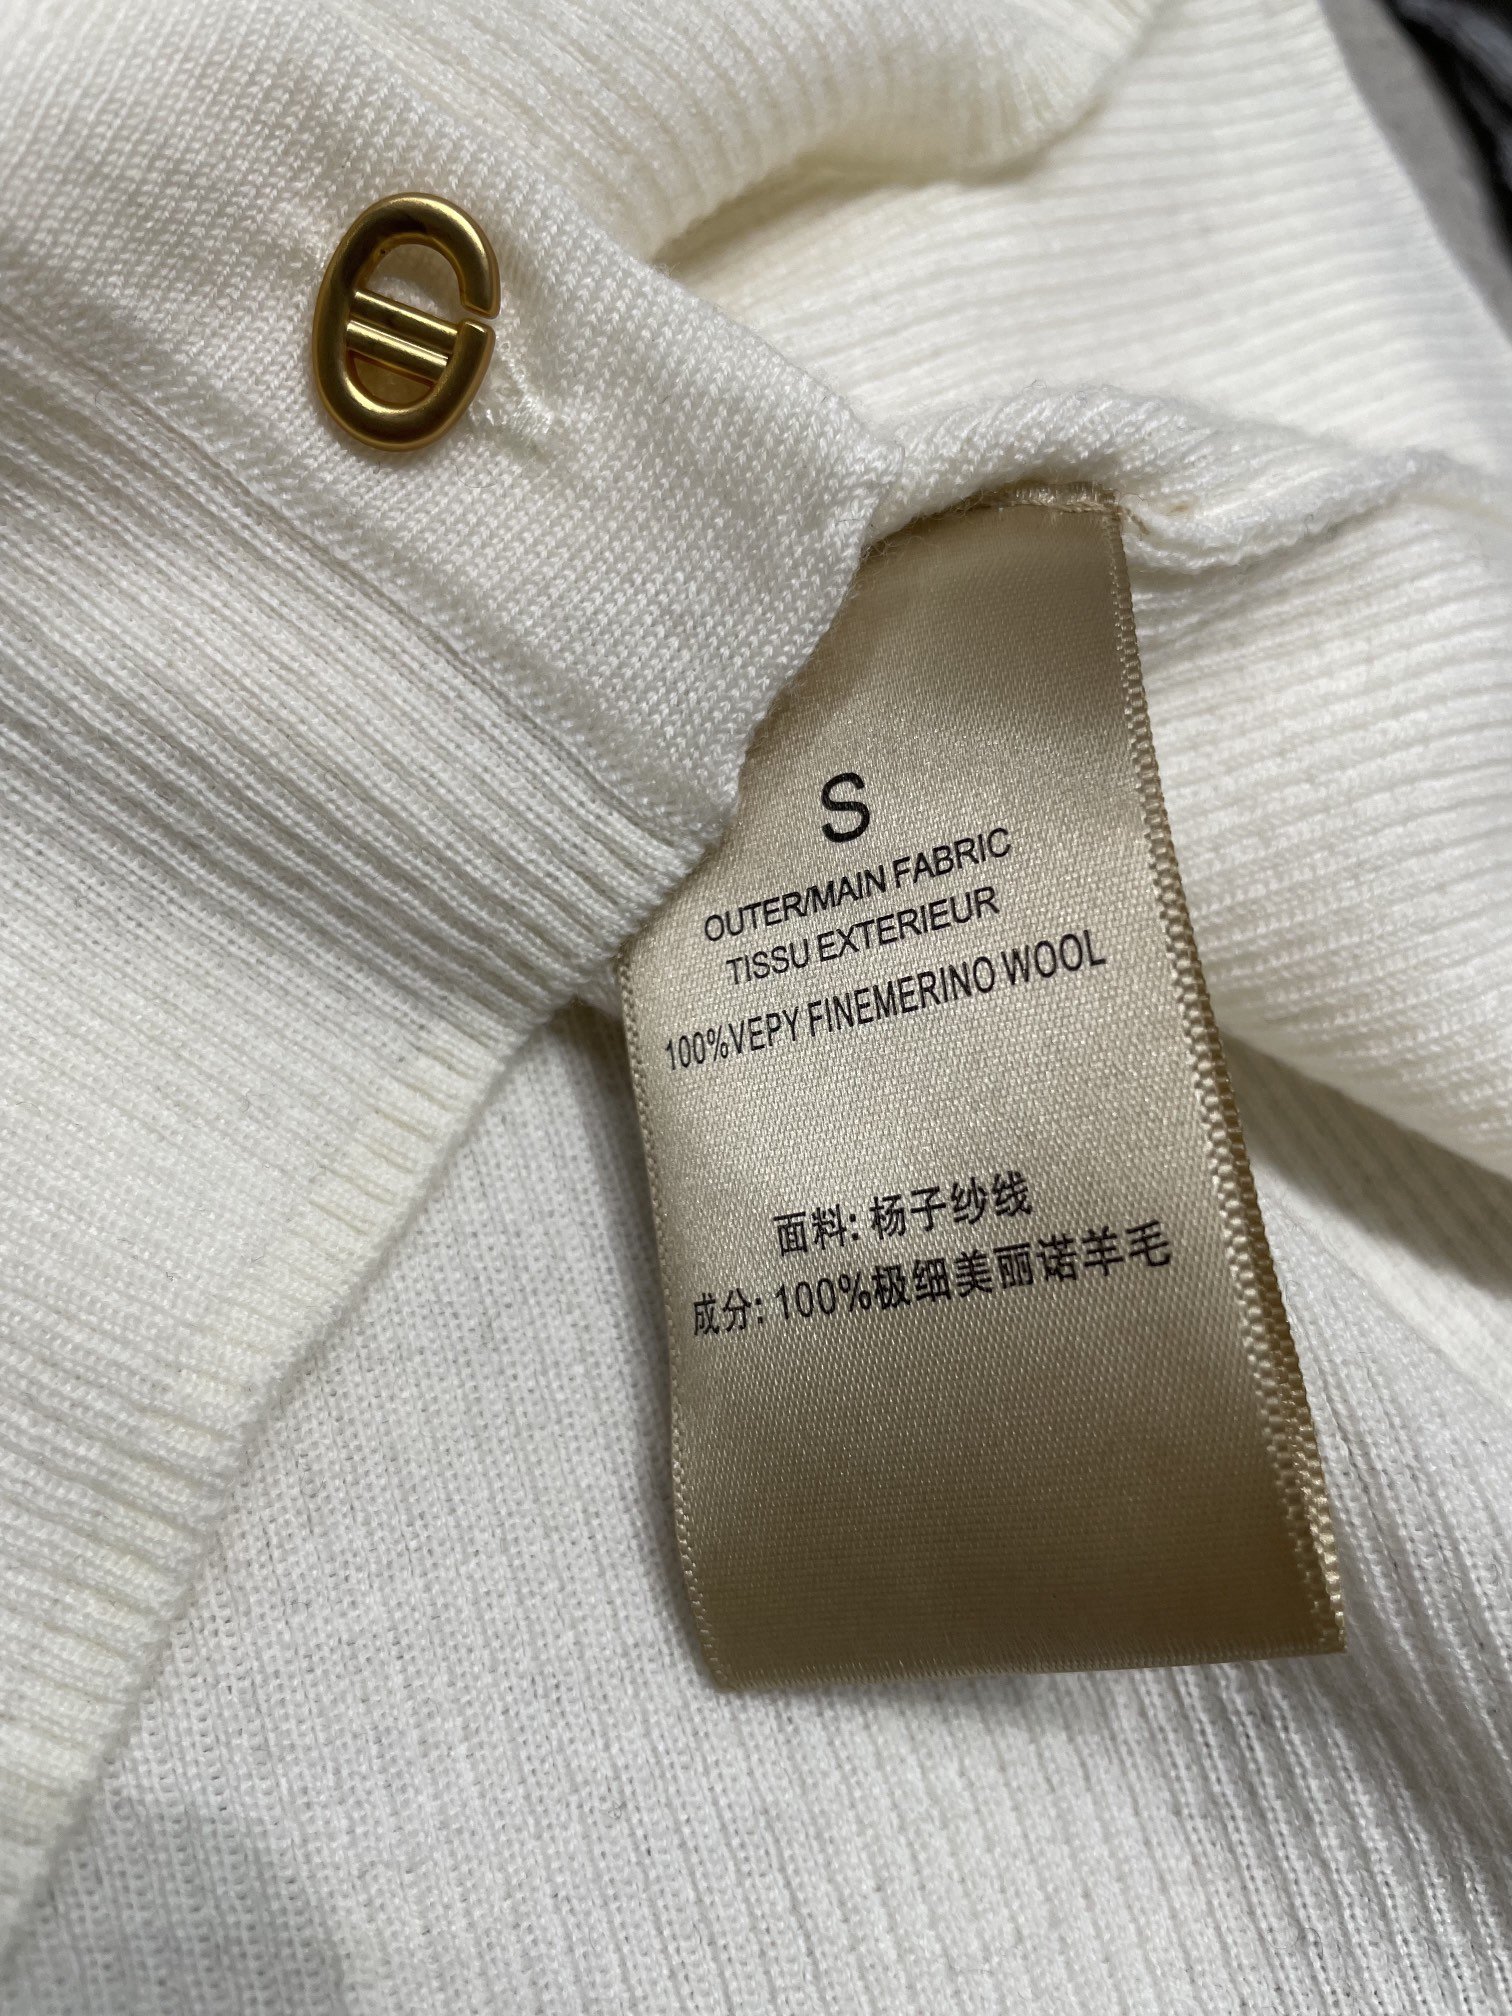 纯色圆领开衫100%扬子羊毛舒适亲肤感百搭get多种穿法7️色SML具体价格咨询客服